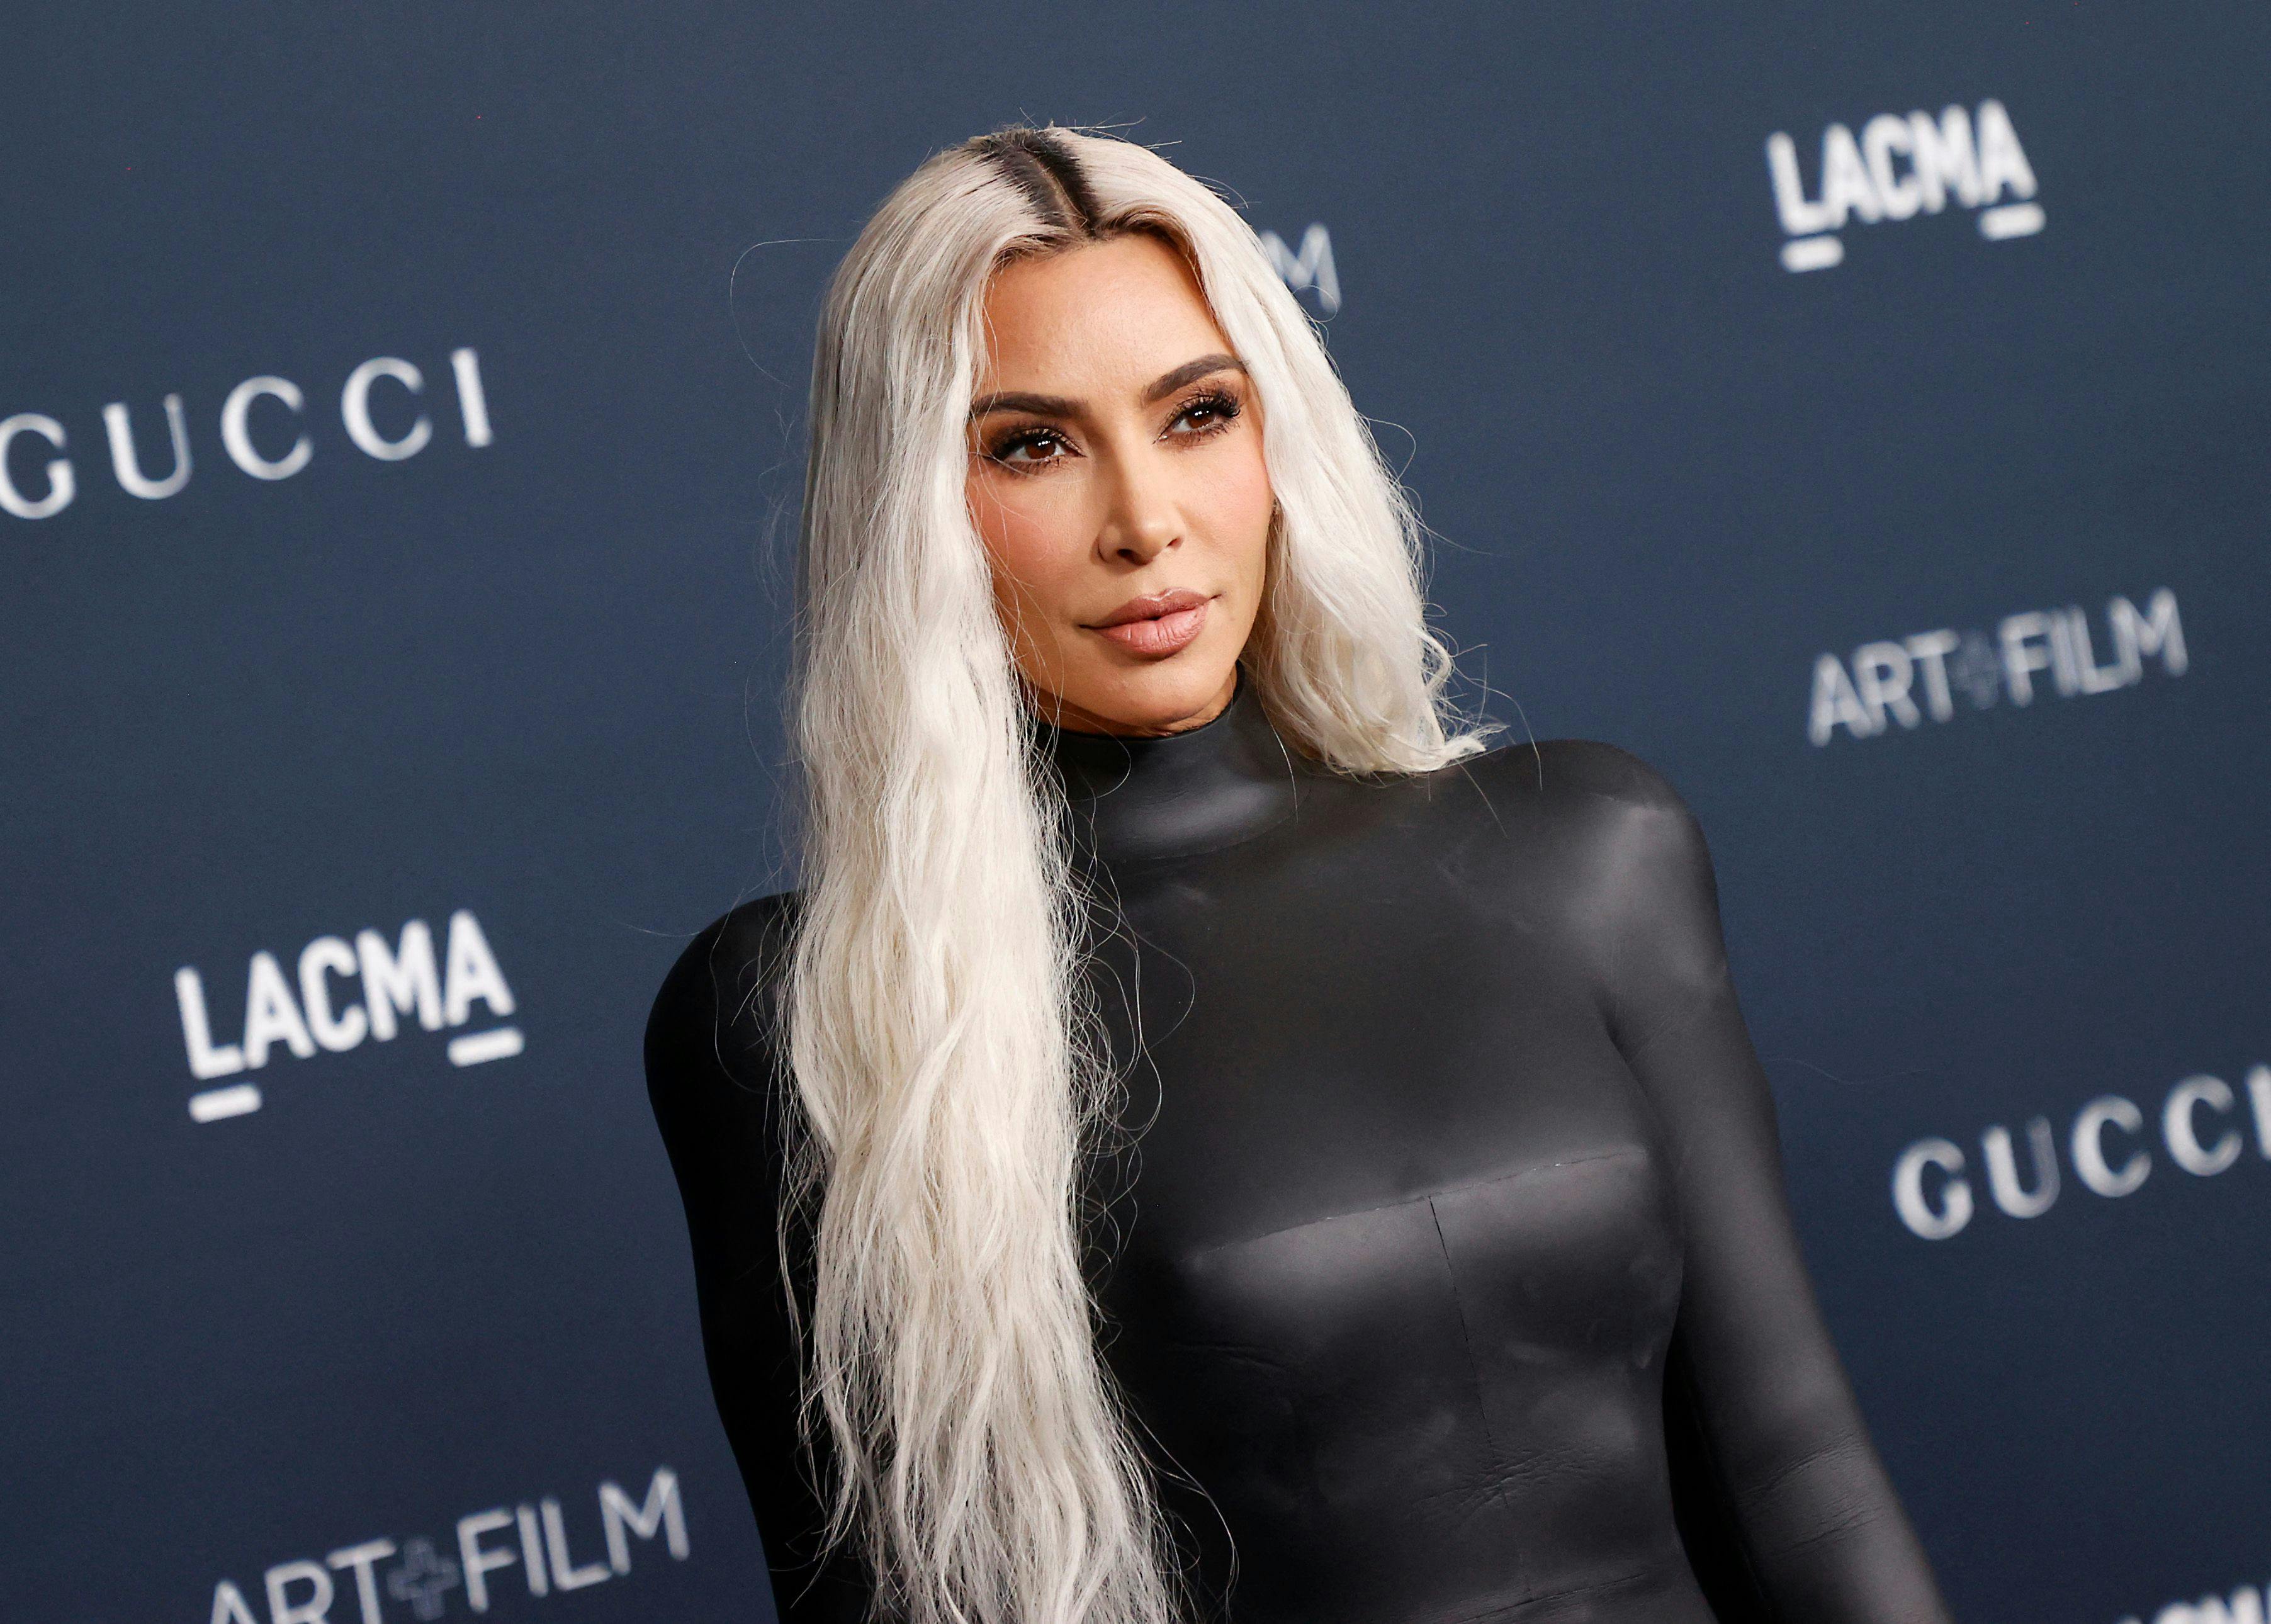 En række bikinibilleder af Kim Kardashian har overbevist flere af hendes fans om, at hun benytter sig af photoshop.
